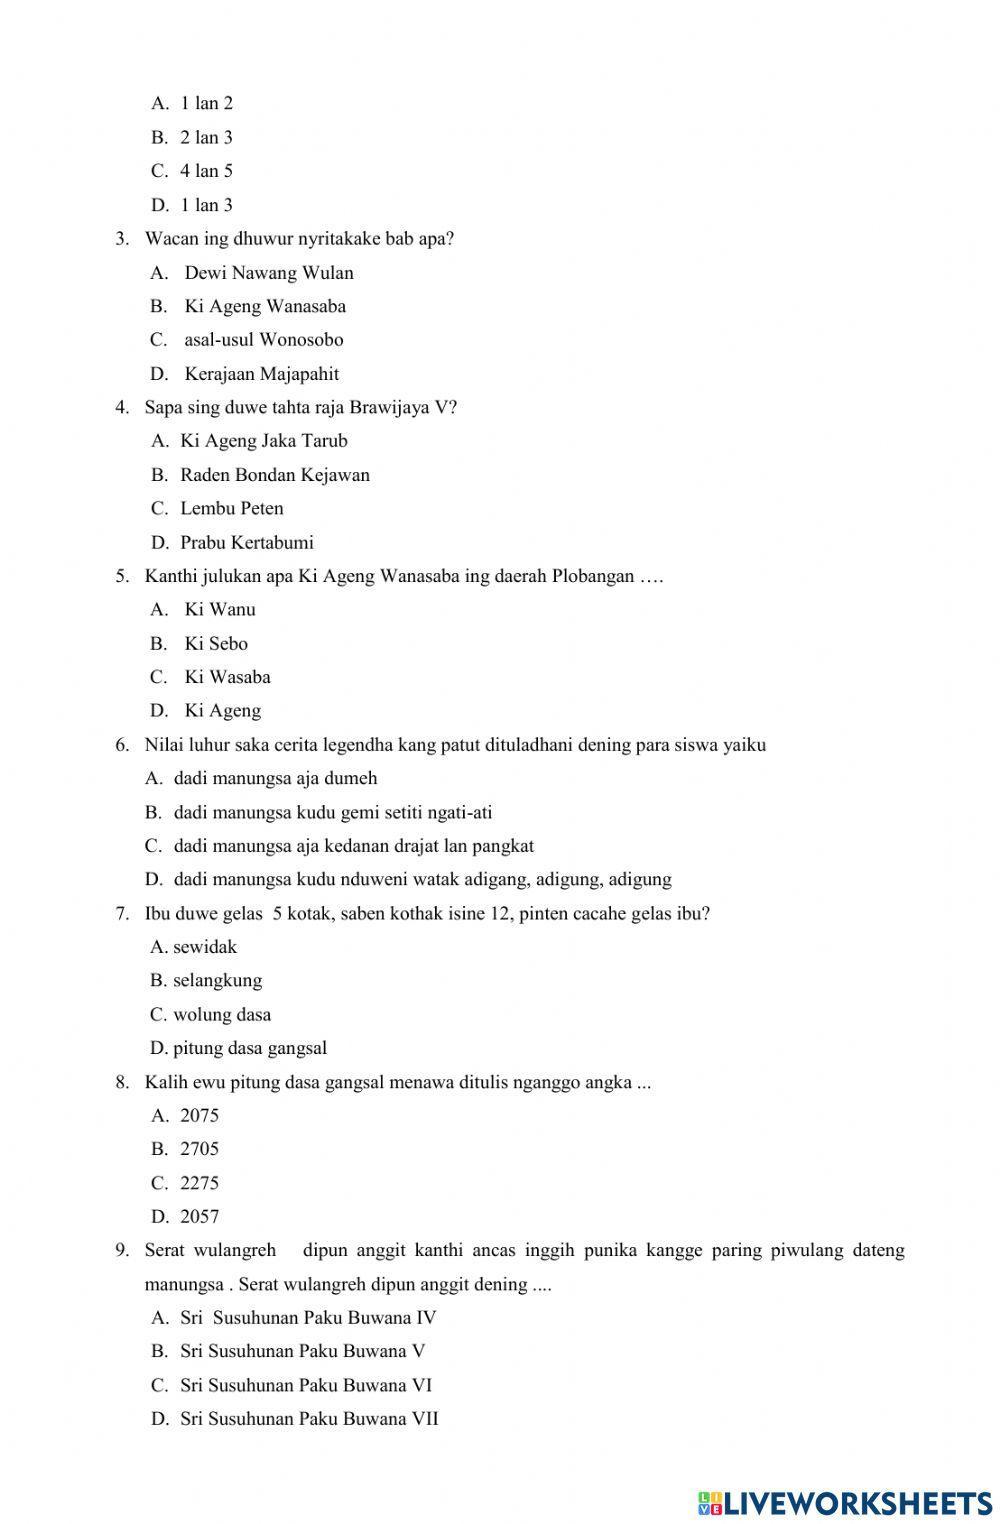 PAS Bahasa Jawa Kelas 8